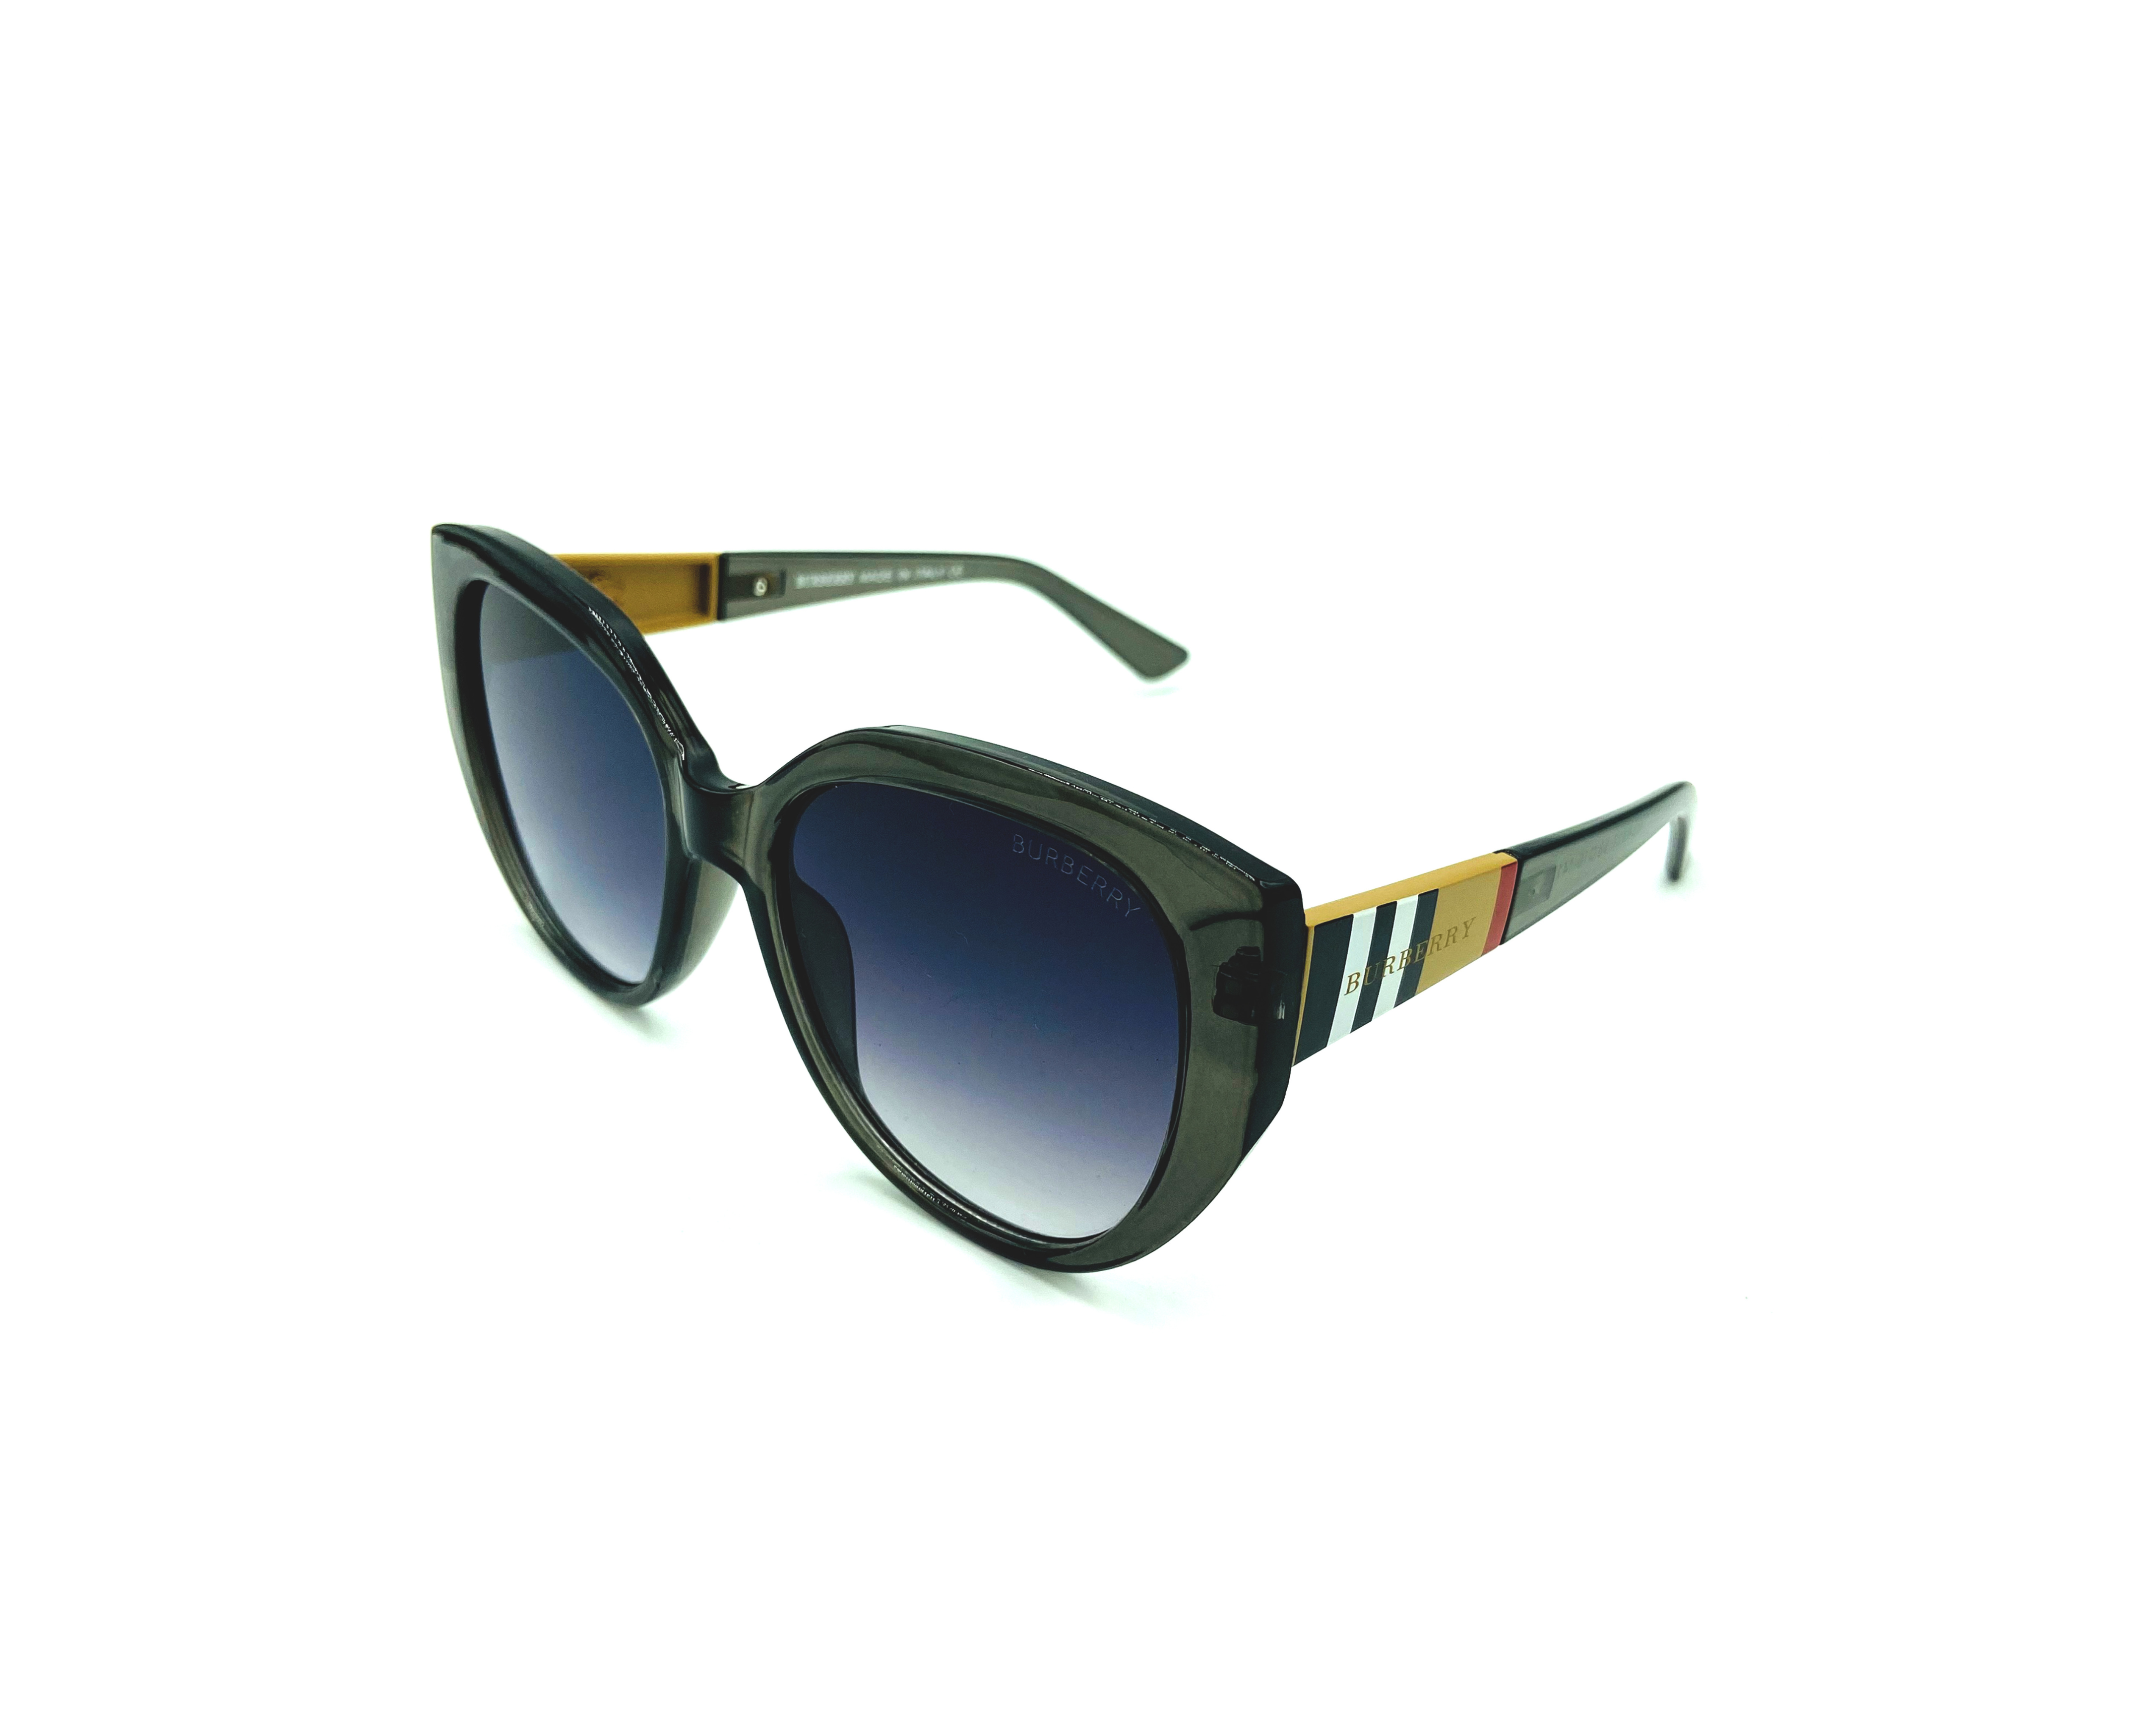 NS Classic - 4317 - Black - Sunglasses